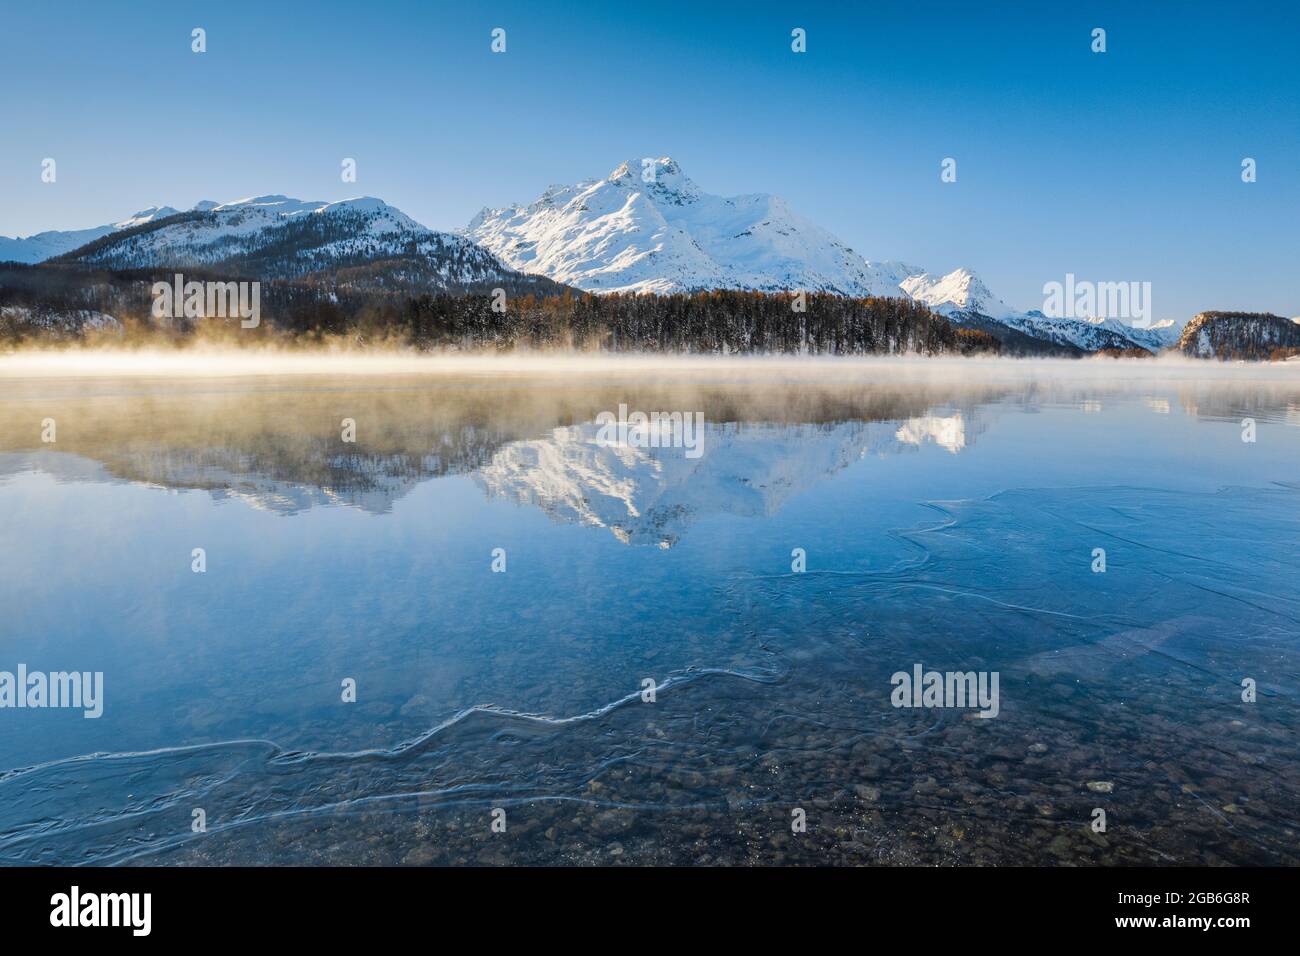 Geografia / viaggio, Svizzera, Lago di Sils, cima della montagna da la Margna, 3158 m, NO-EXCLUSIVE-USE PER CARTA-BIGLIETTO-DI-AUGURI-PIEGHEVOLE-USO-CARTOLINA Foto Stock